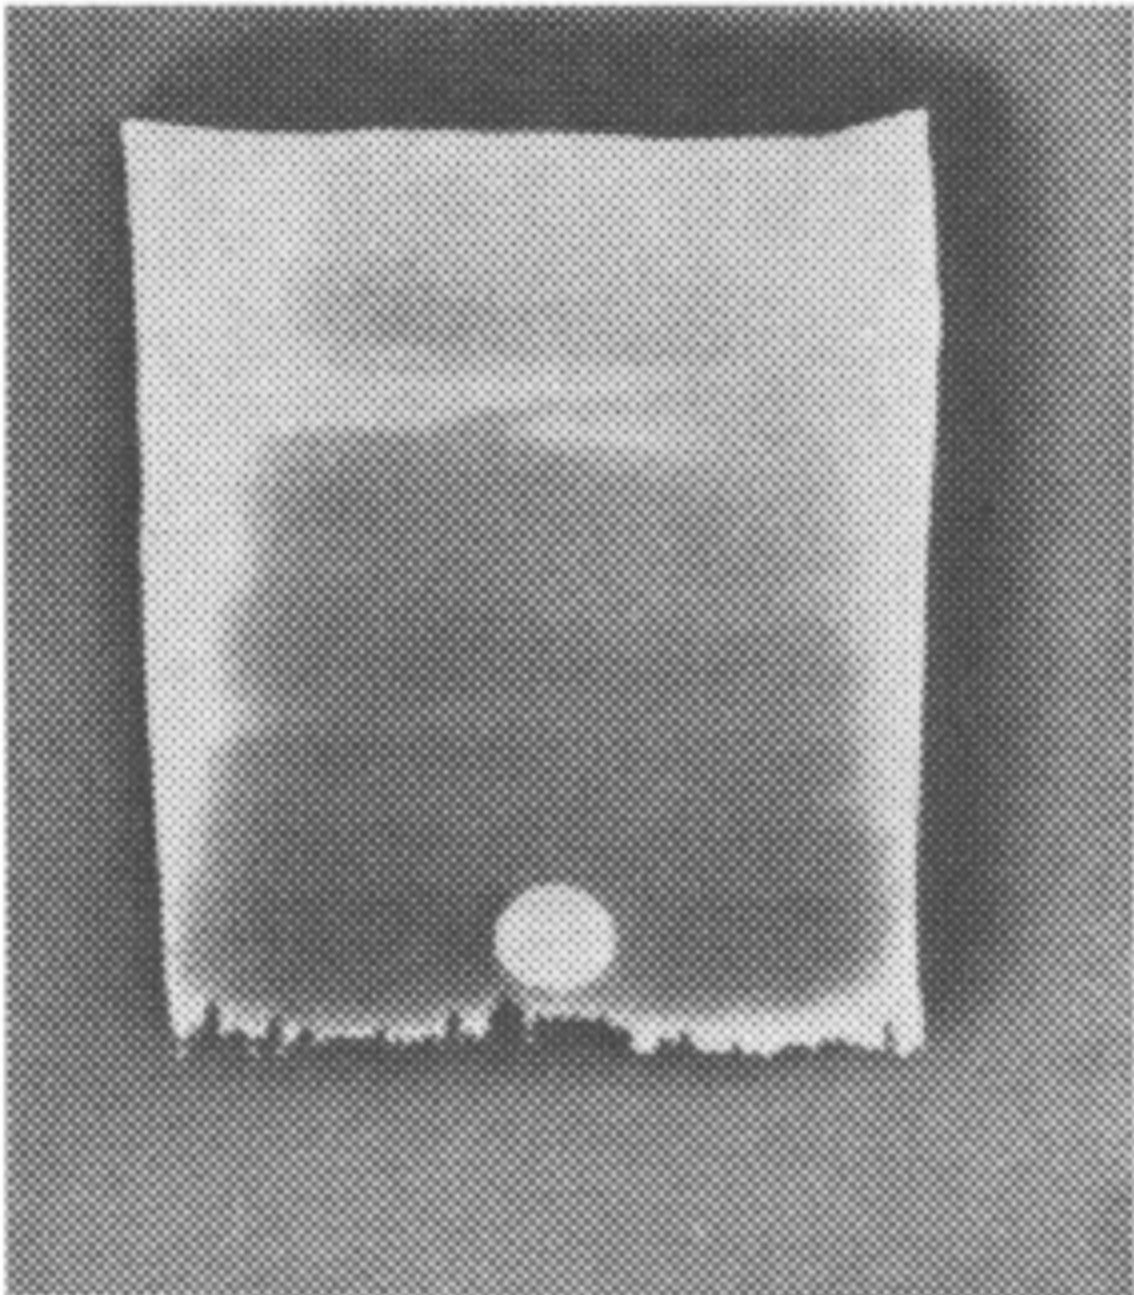 Фото 19. Через несколько минут после восхода Солнца 19 июня 1955 г.